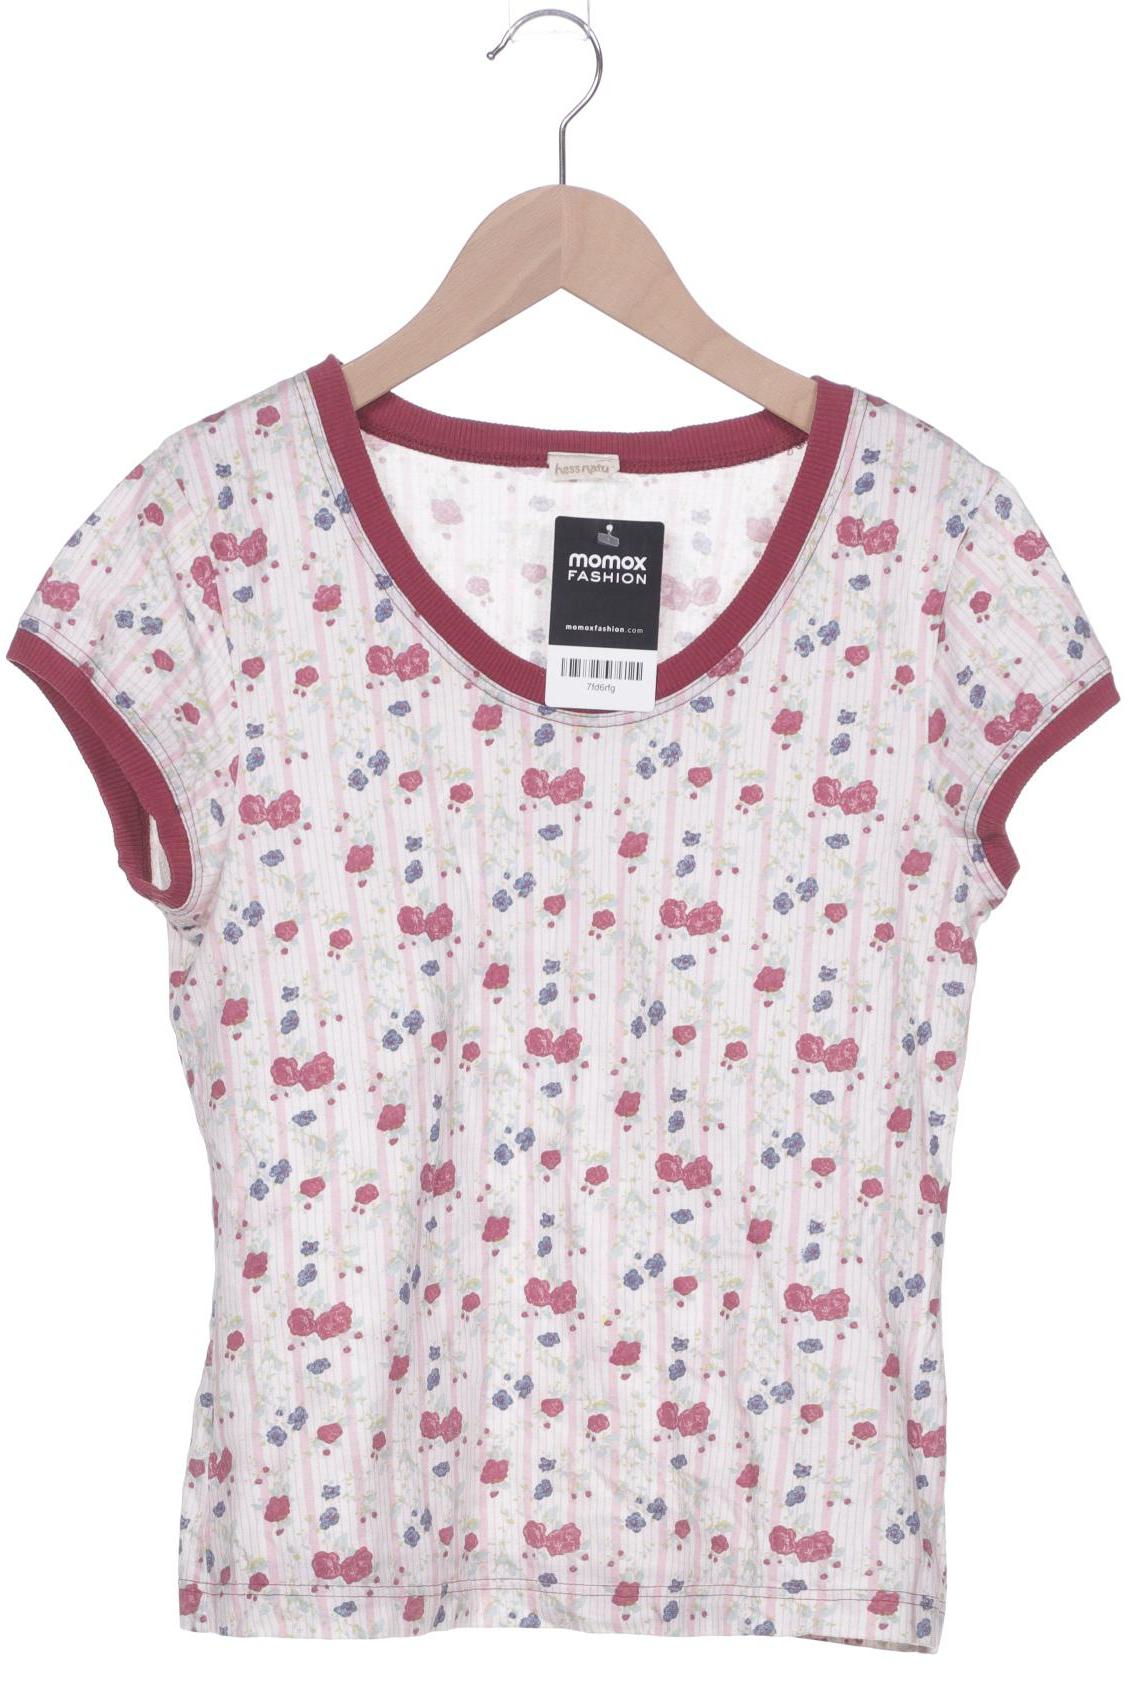 hessnatur Damen T-Shirt, pink von hessnatur